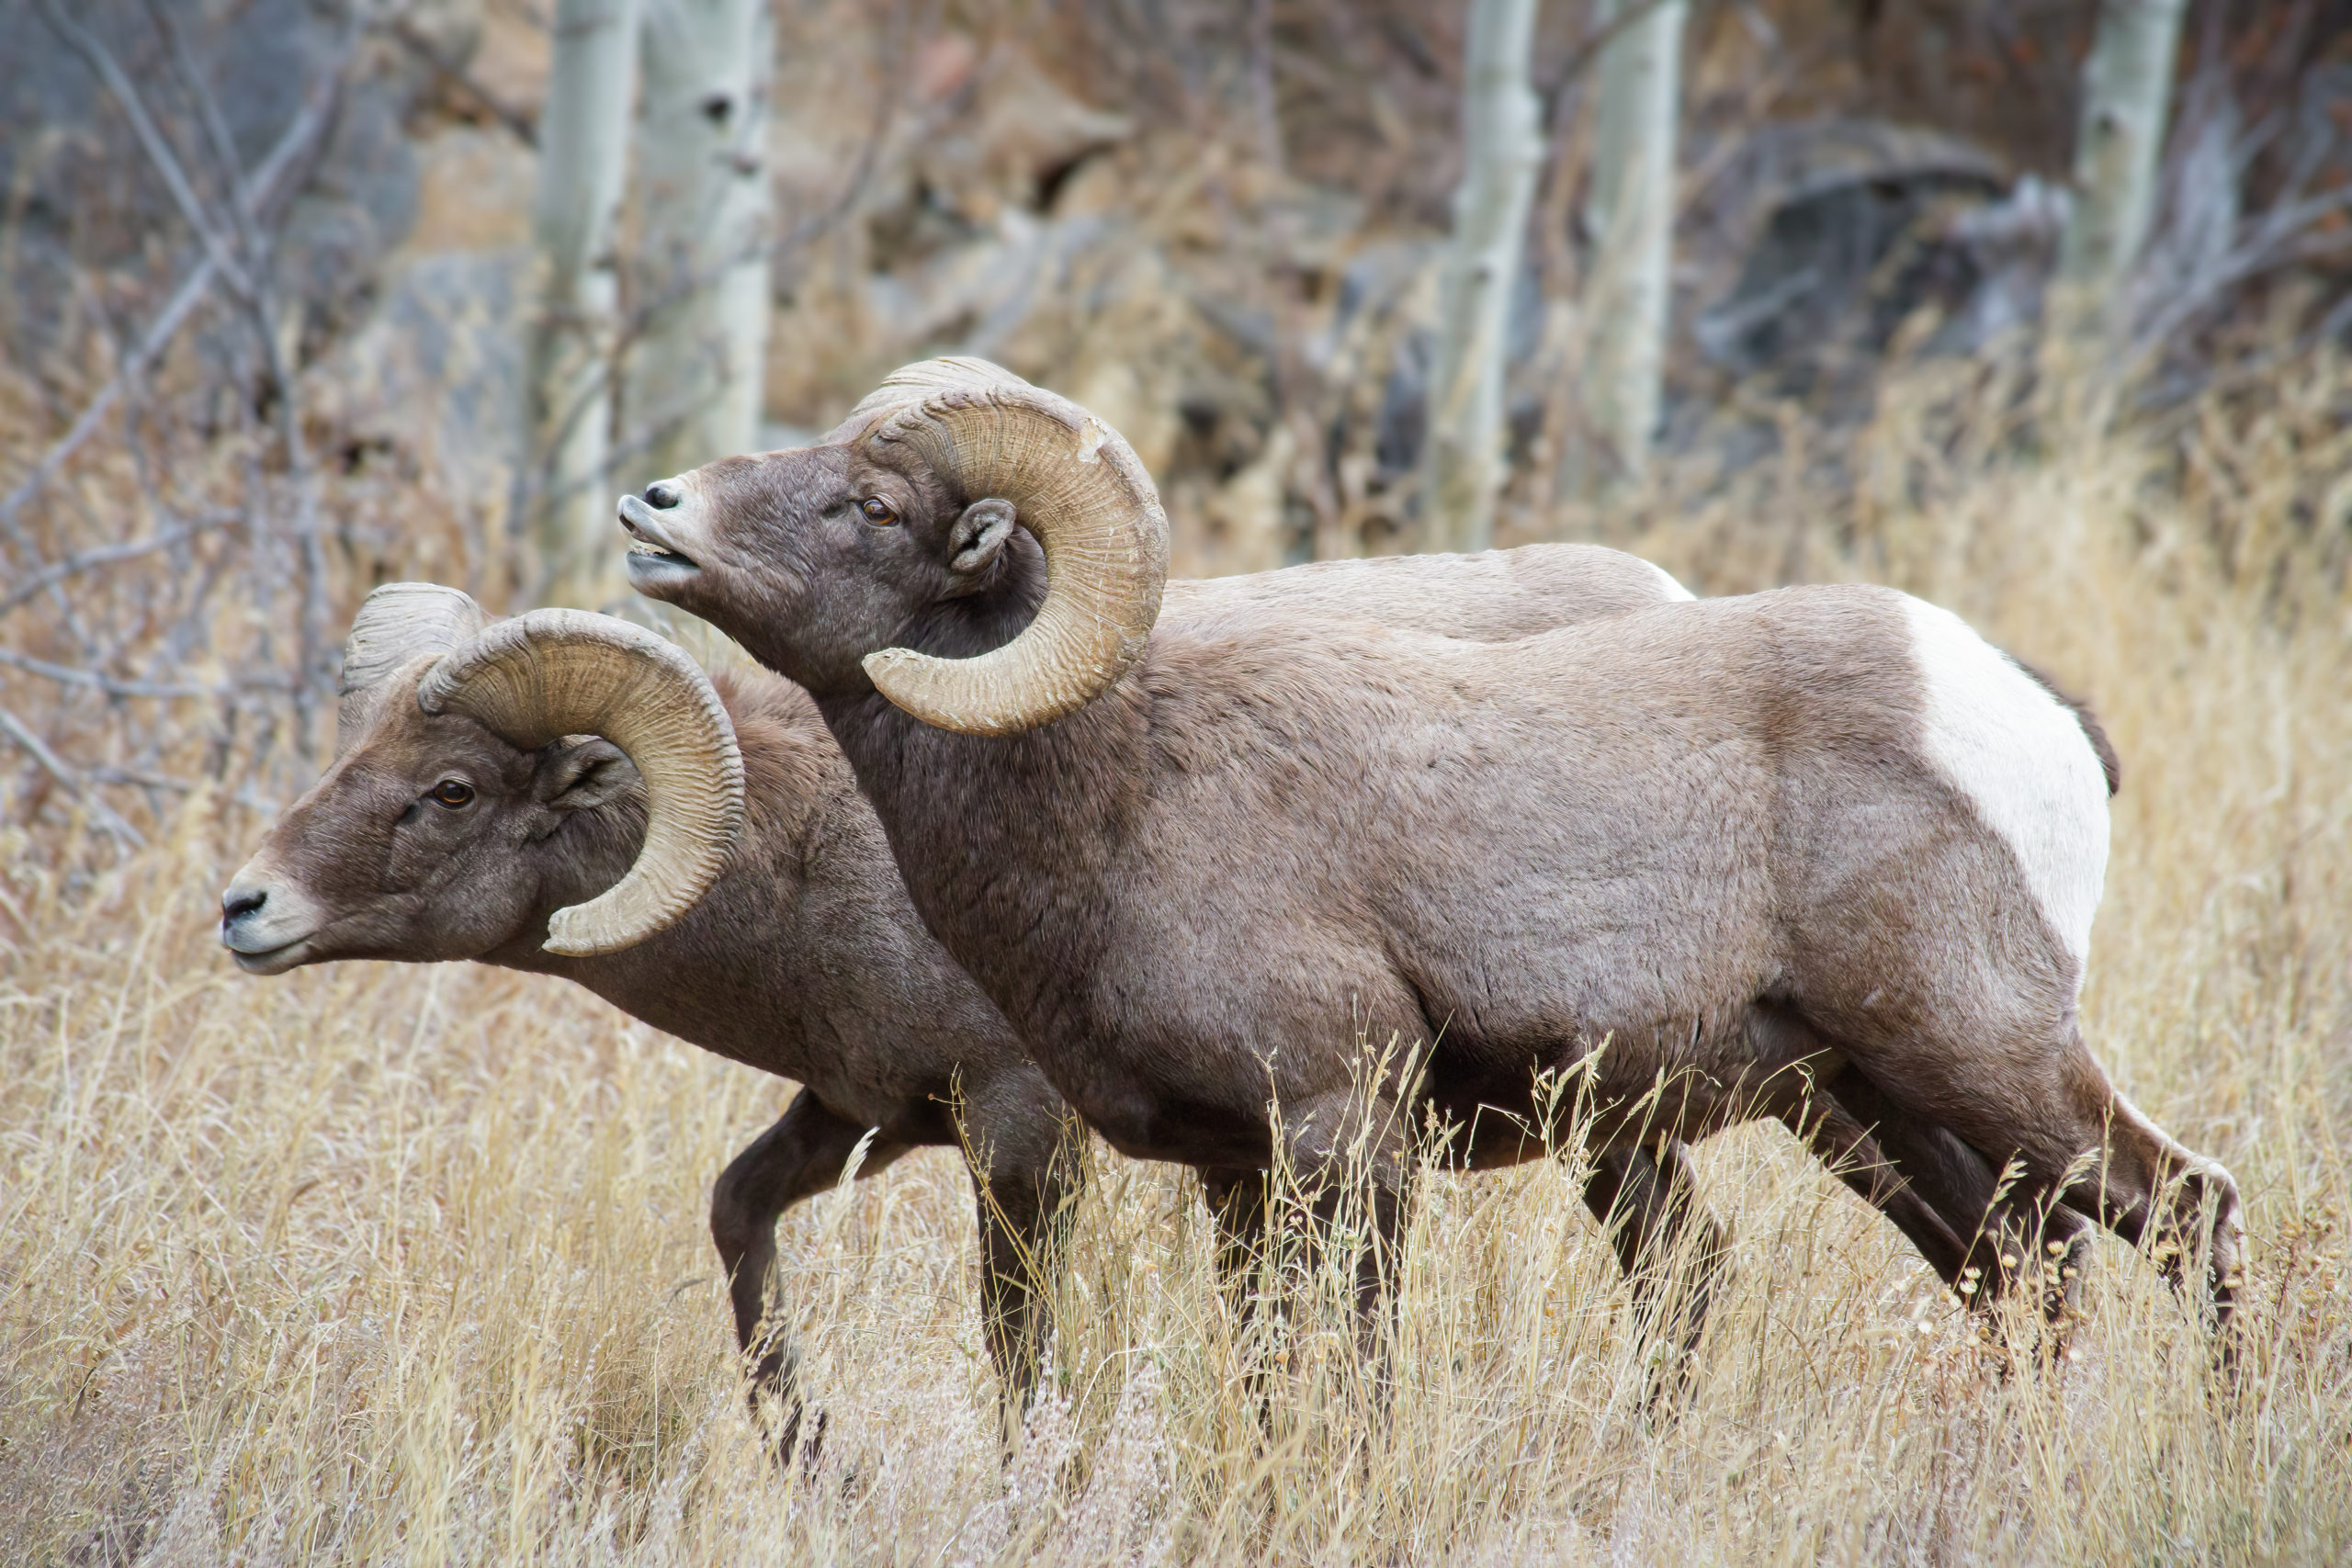 Wild Bighorn Sheep in the Rocky Mountains of Colorado. Mammals of Colorado